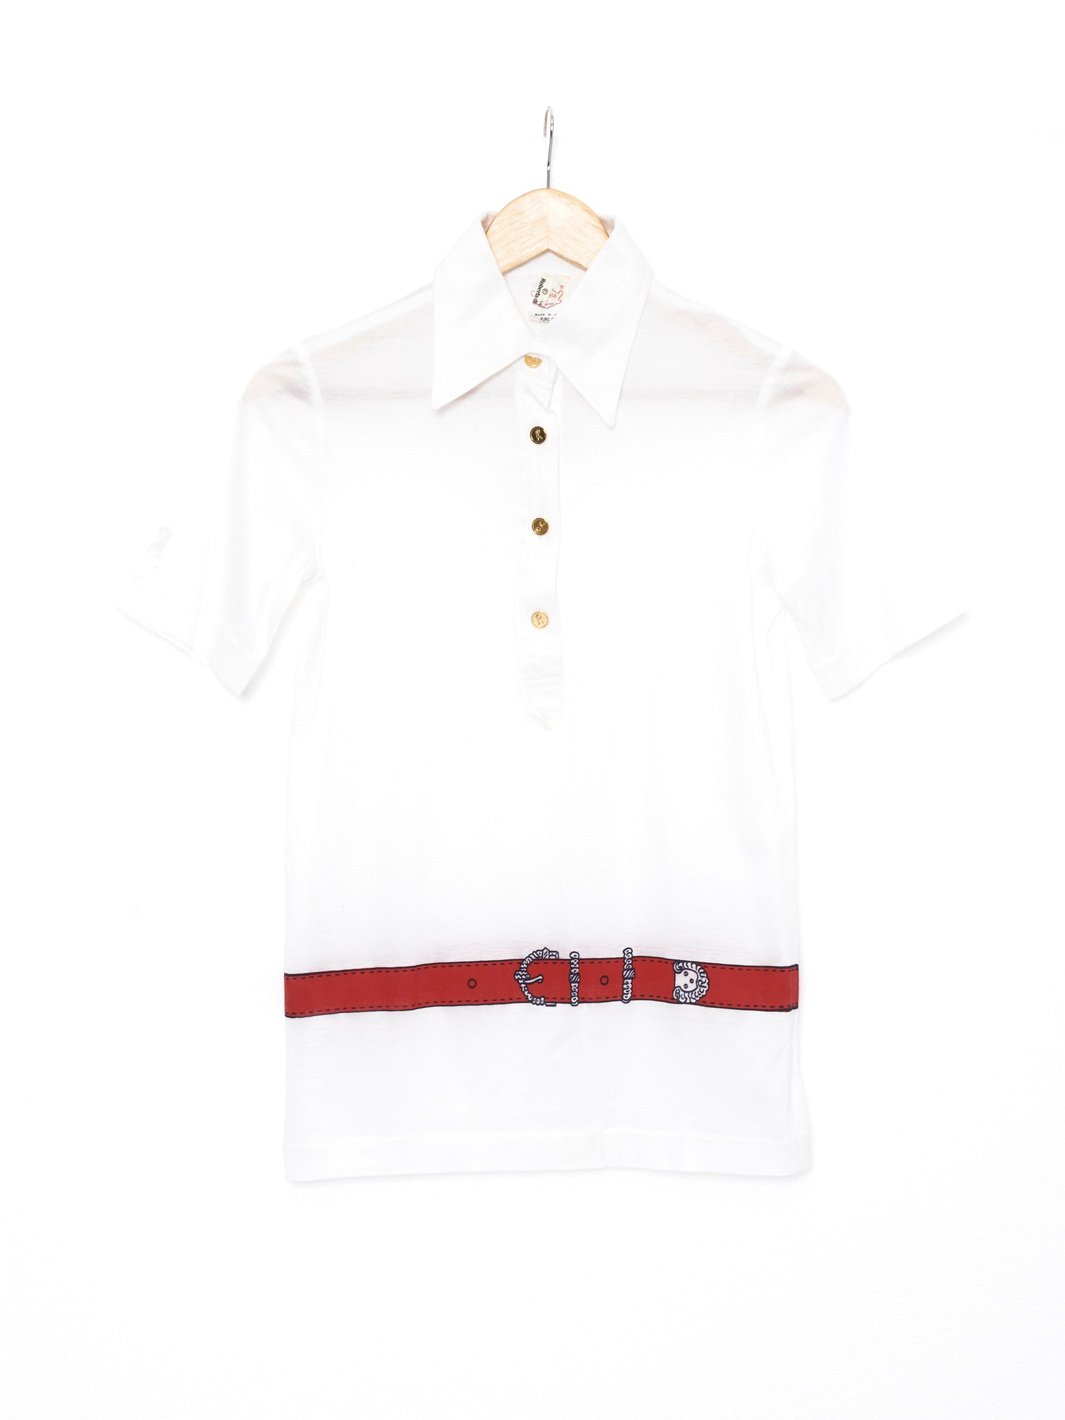 1970s Roberta Di Camerino polo shirt in white cotton